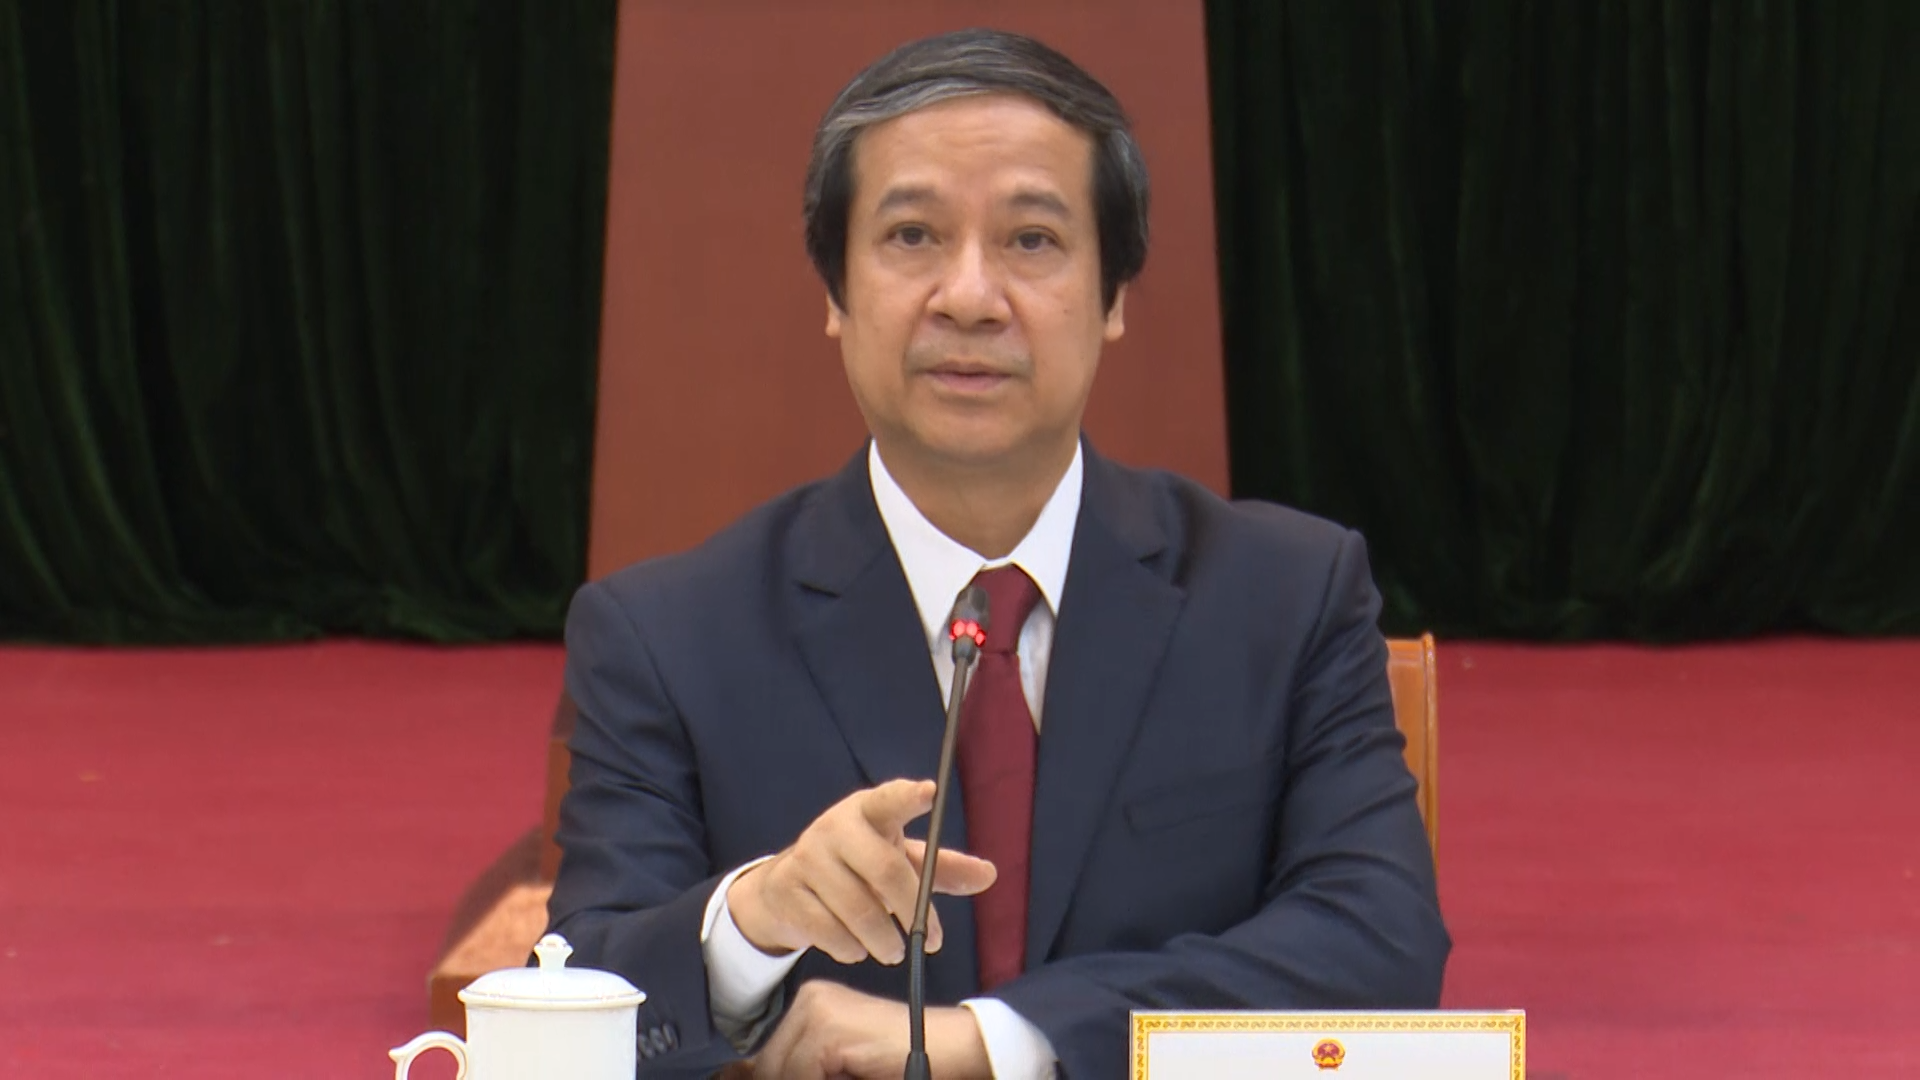 Bộ trưởng Nguyễn Kim Sơn: dạy các môn tích hợp có điểm vướng, điểm nghẽn, điểm khó - Ảnh 1.